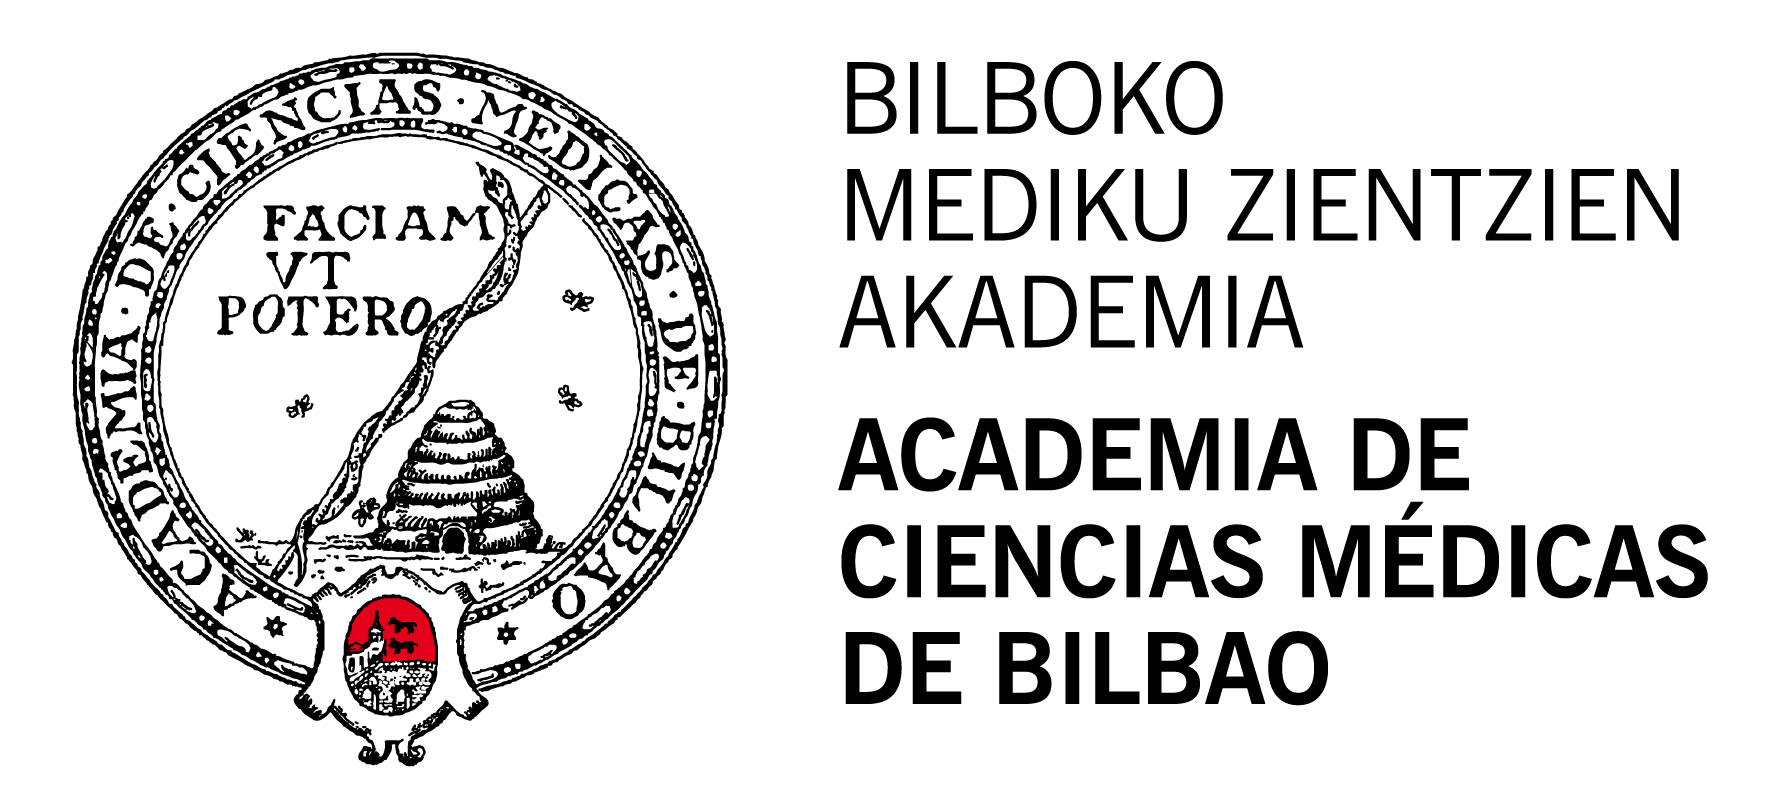 Academia de Ciencias Medicas de Bilbao